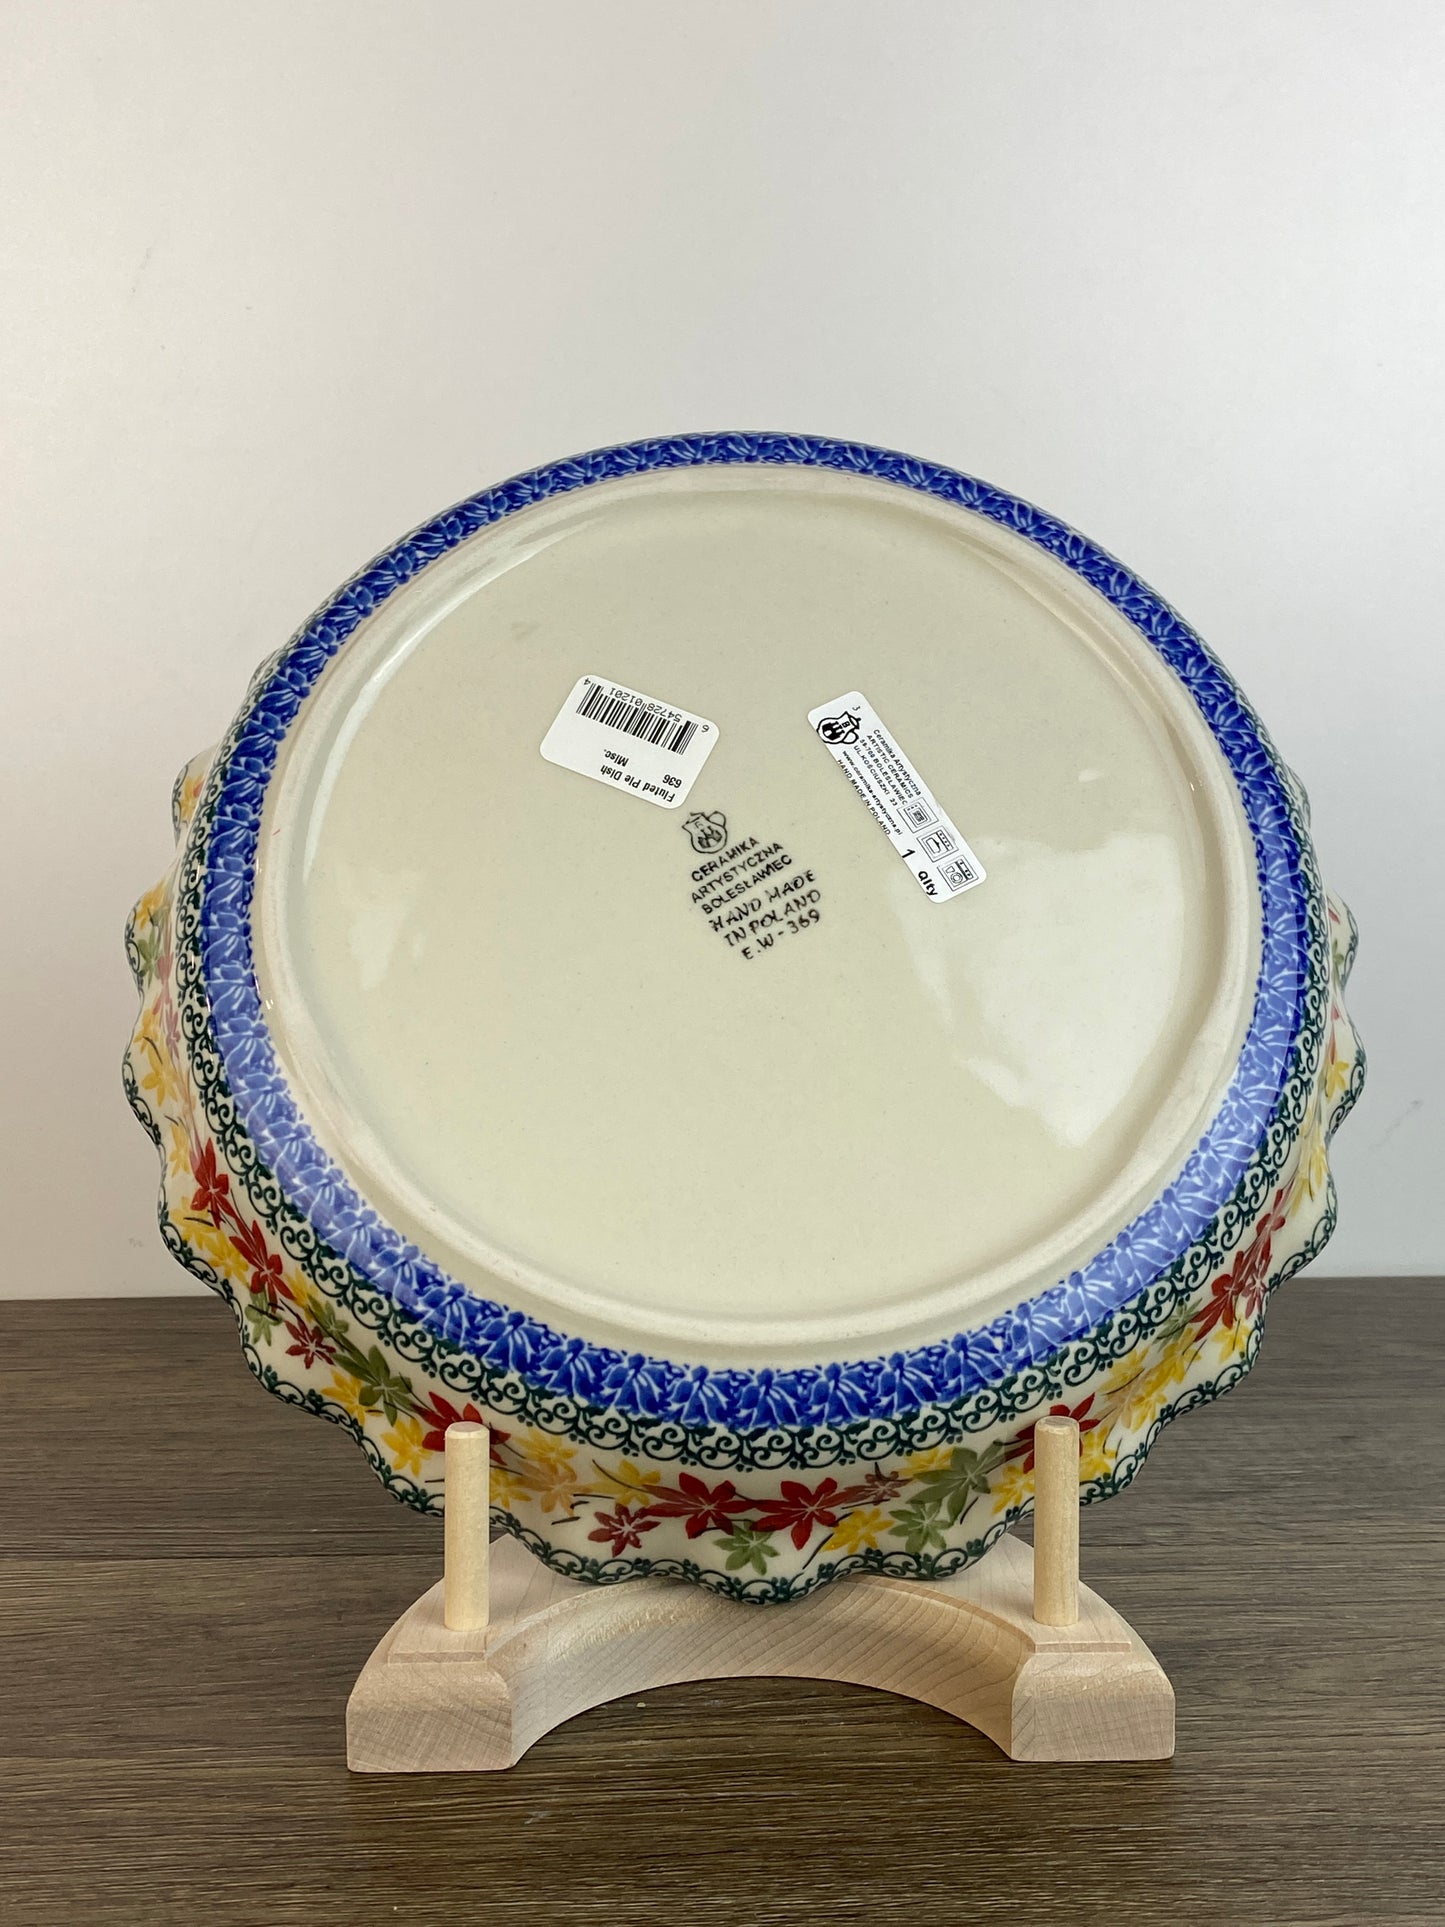 SALE Ruffled Pie Plate / Round Baker - Shape 636 - Pattern 2533